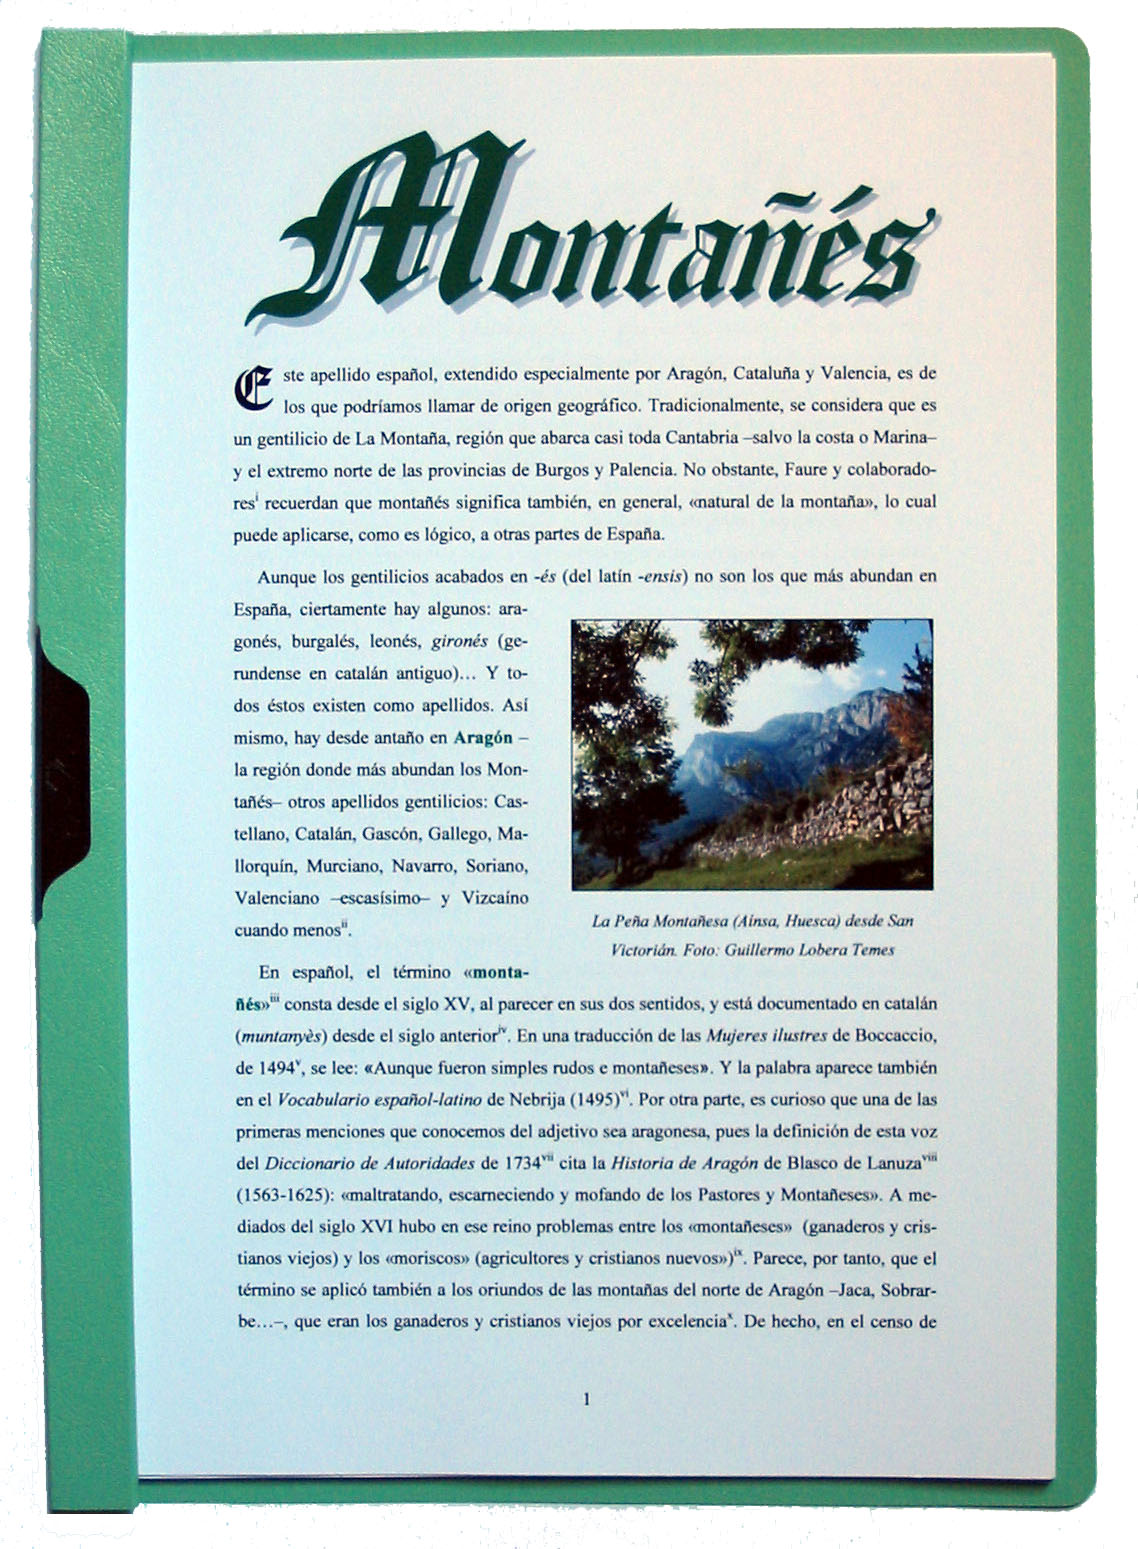 Fotografía de la portada del apellido Montañés. Pulse encima para ampliar la imagen (334 kb).